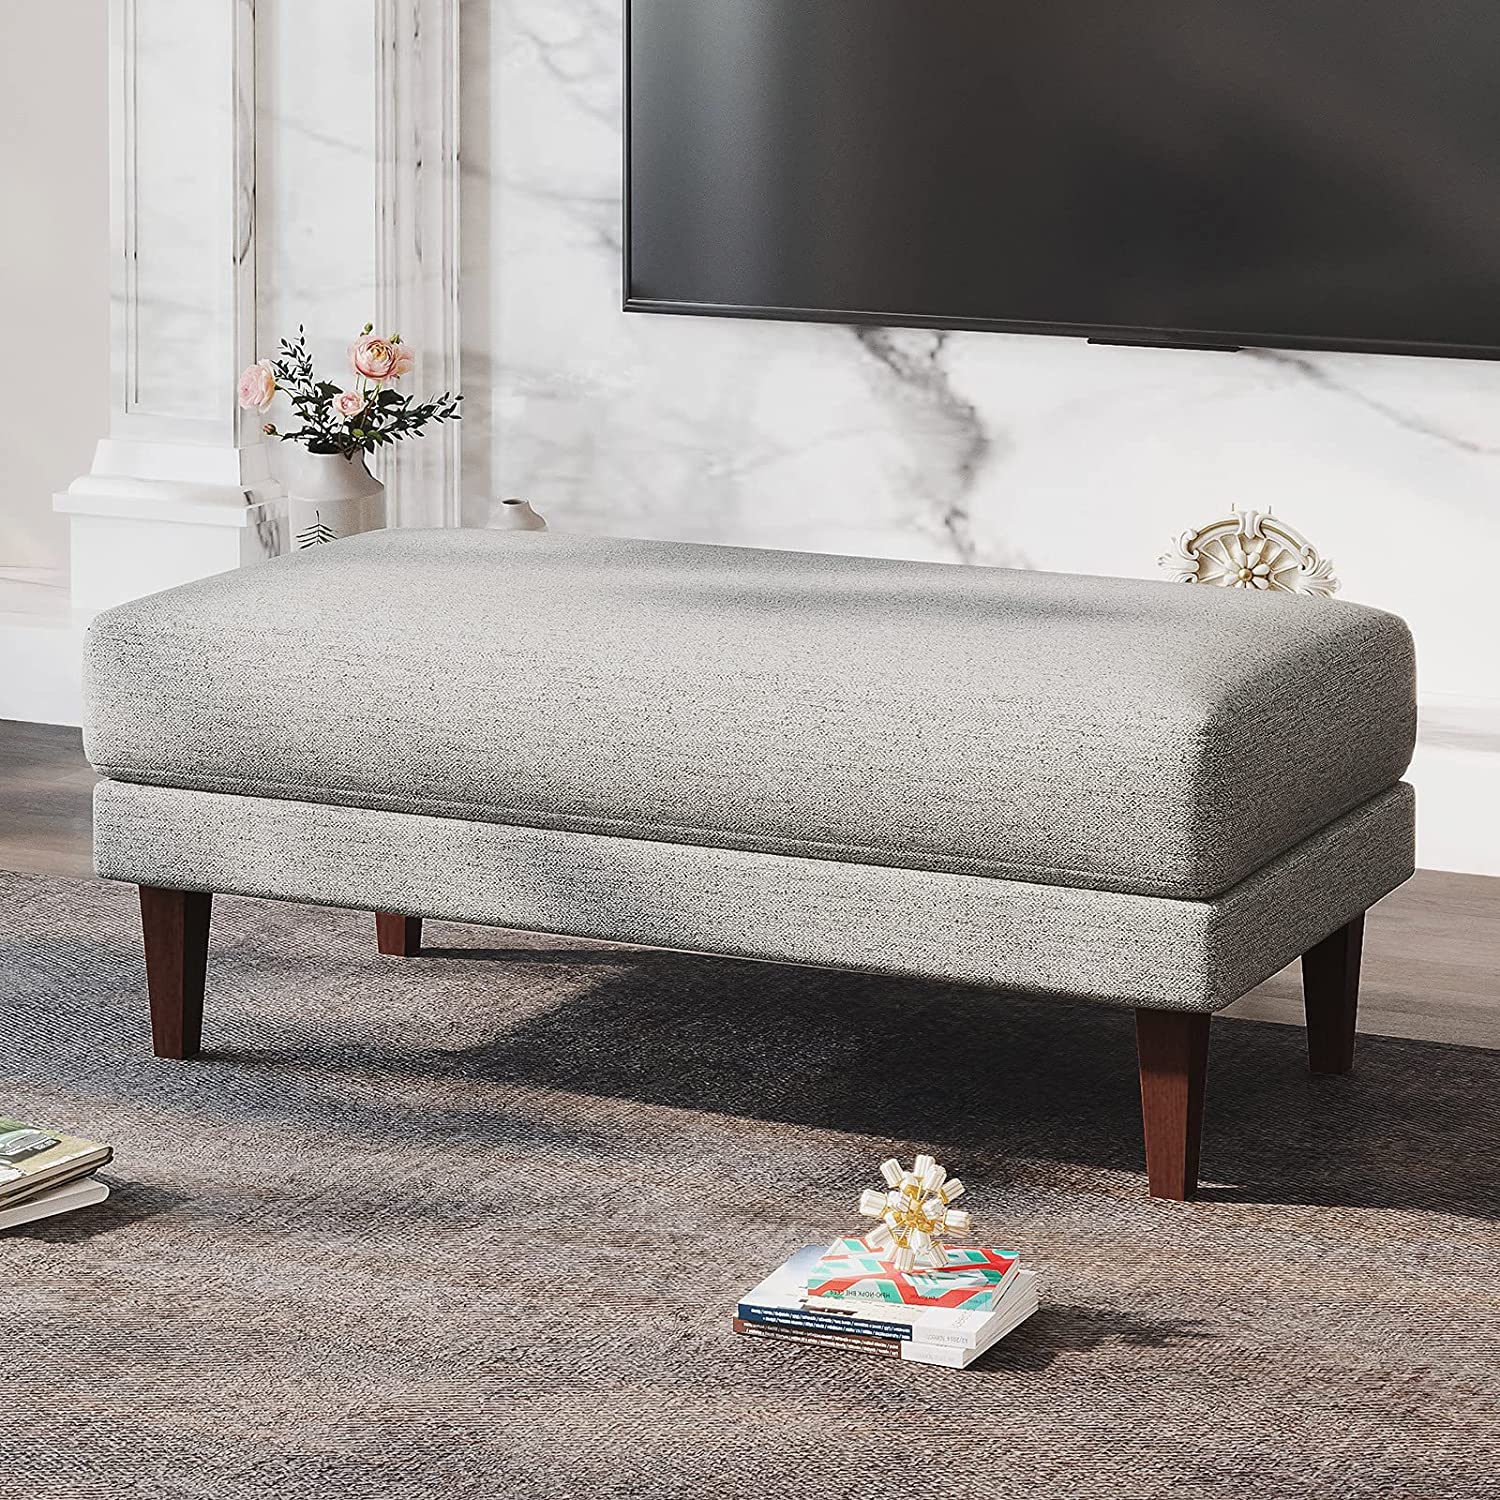 Ghế đôn sofa chữ nhật vải bố chất lượng đẹp giá rẻ nhiều size màu tự chọn